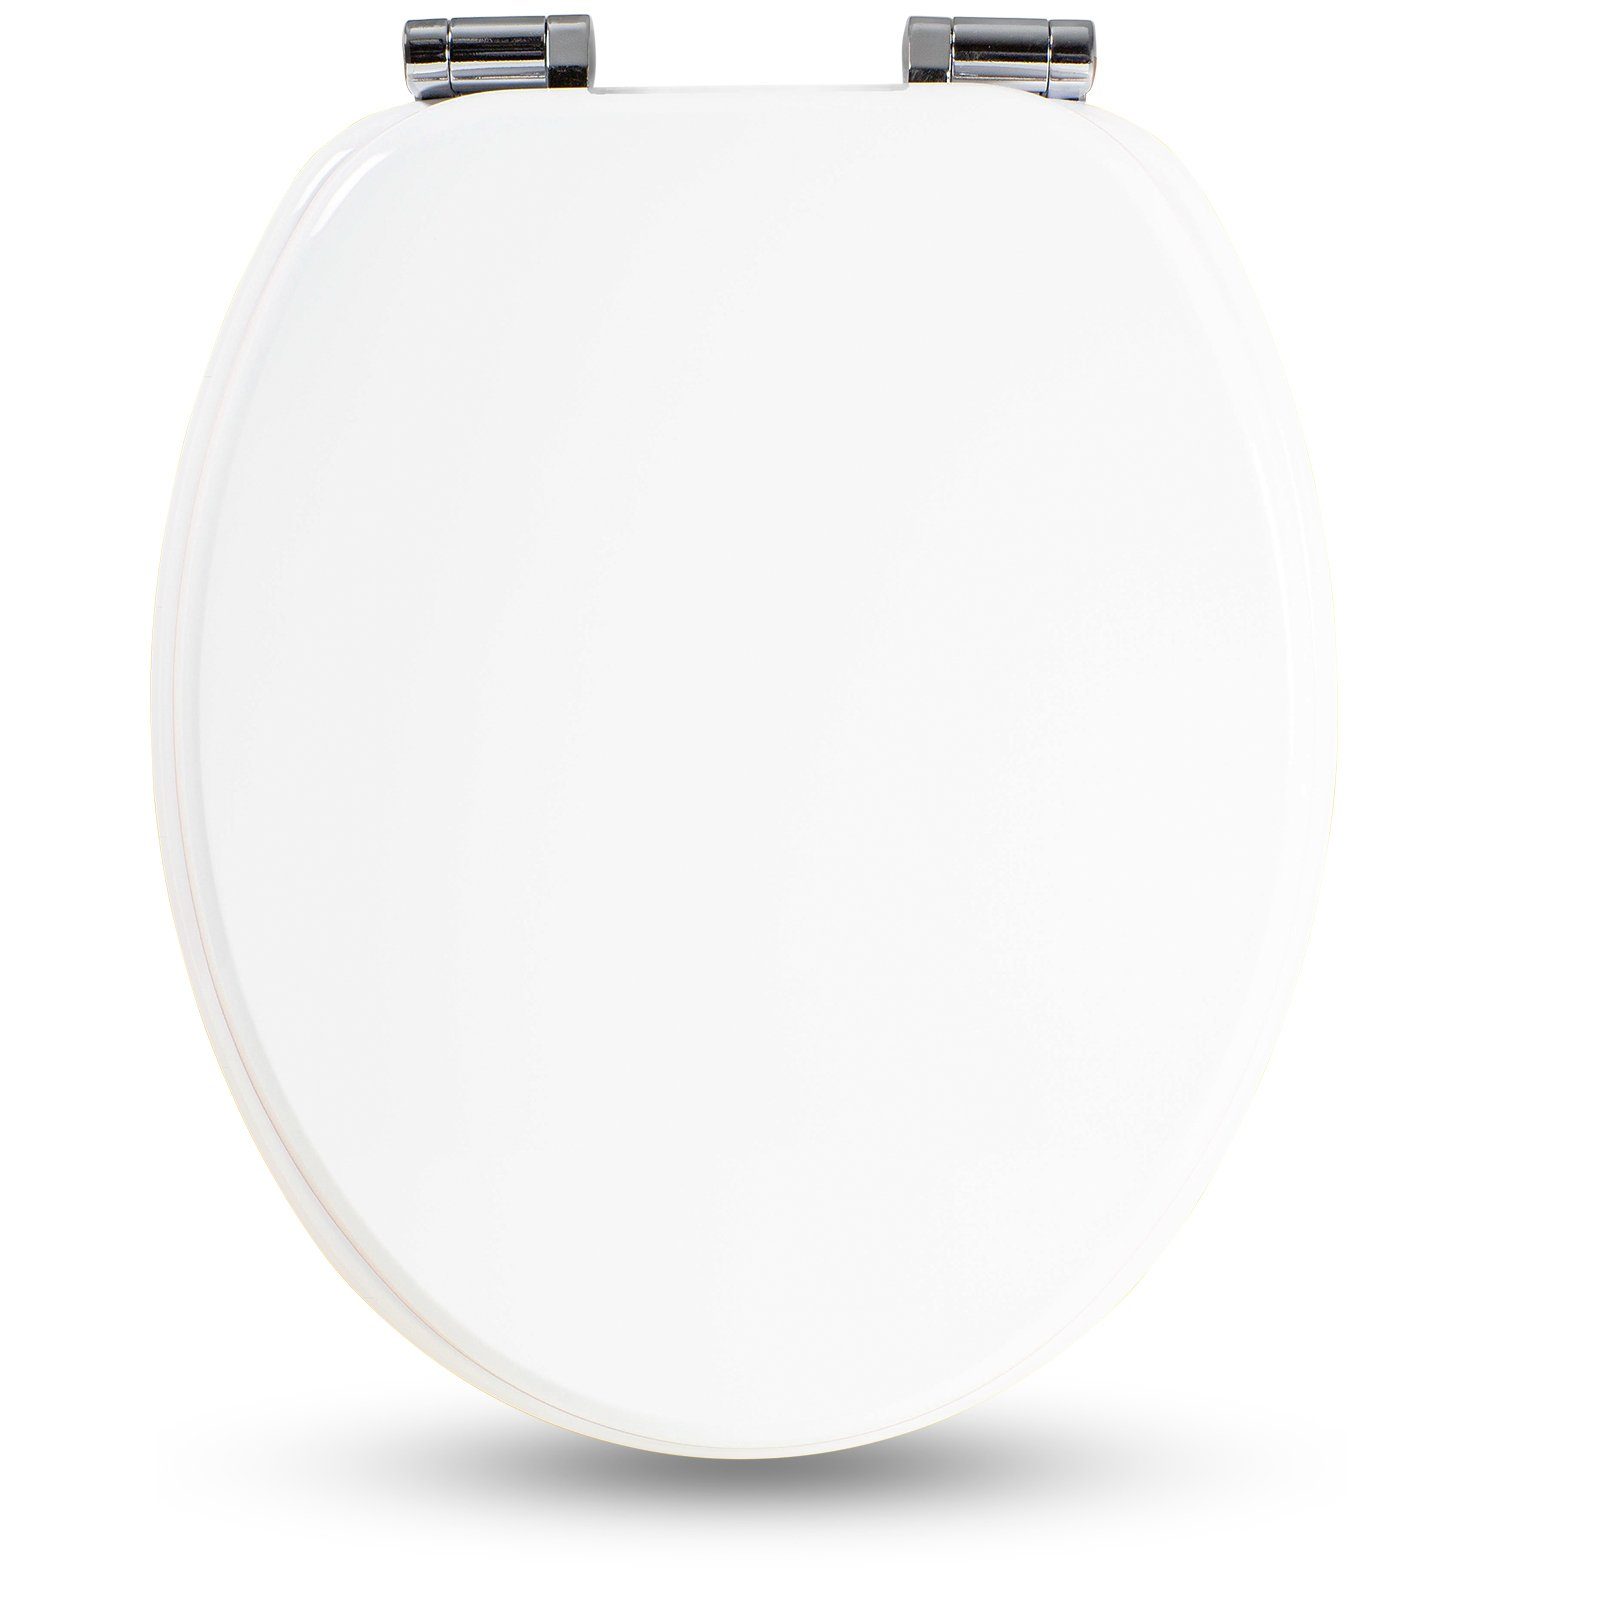 Sanfino WC-Sitz "White“ Premium Toilettendeckel mit Absenkautomatik aus Holz, bunter WC Sitz mit Motiv, hoher Sitzkomfort, einfache Montage